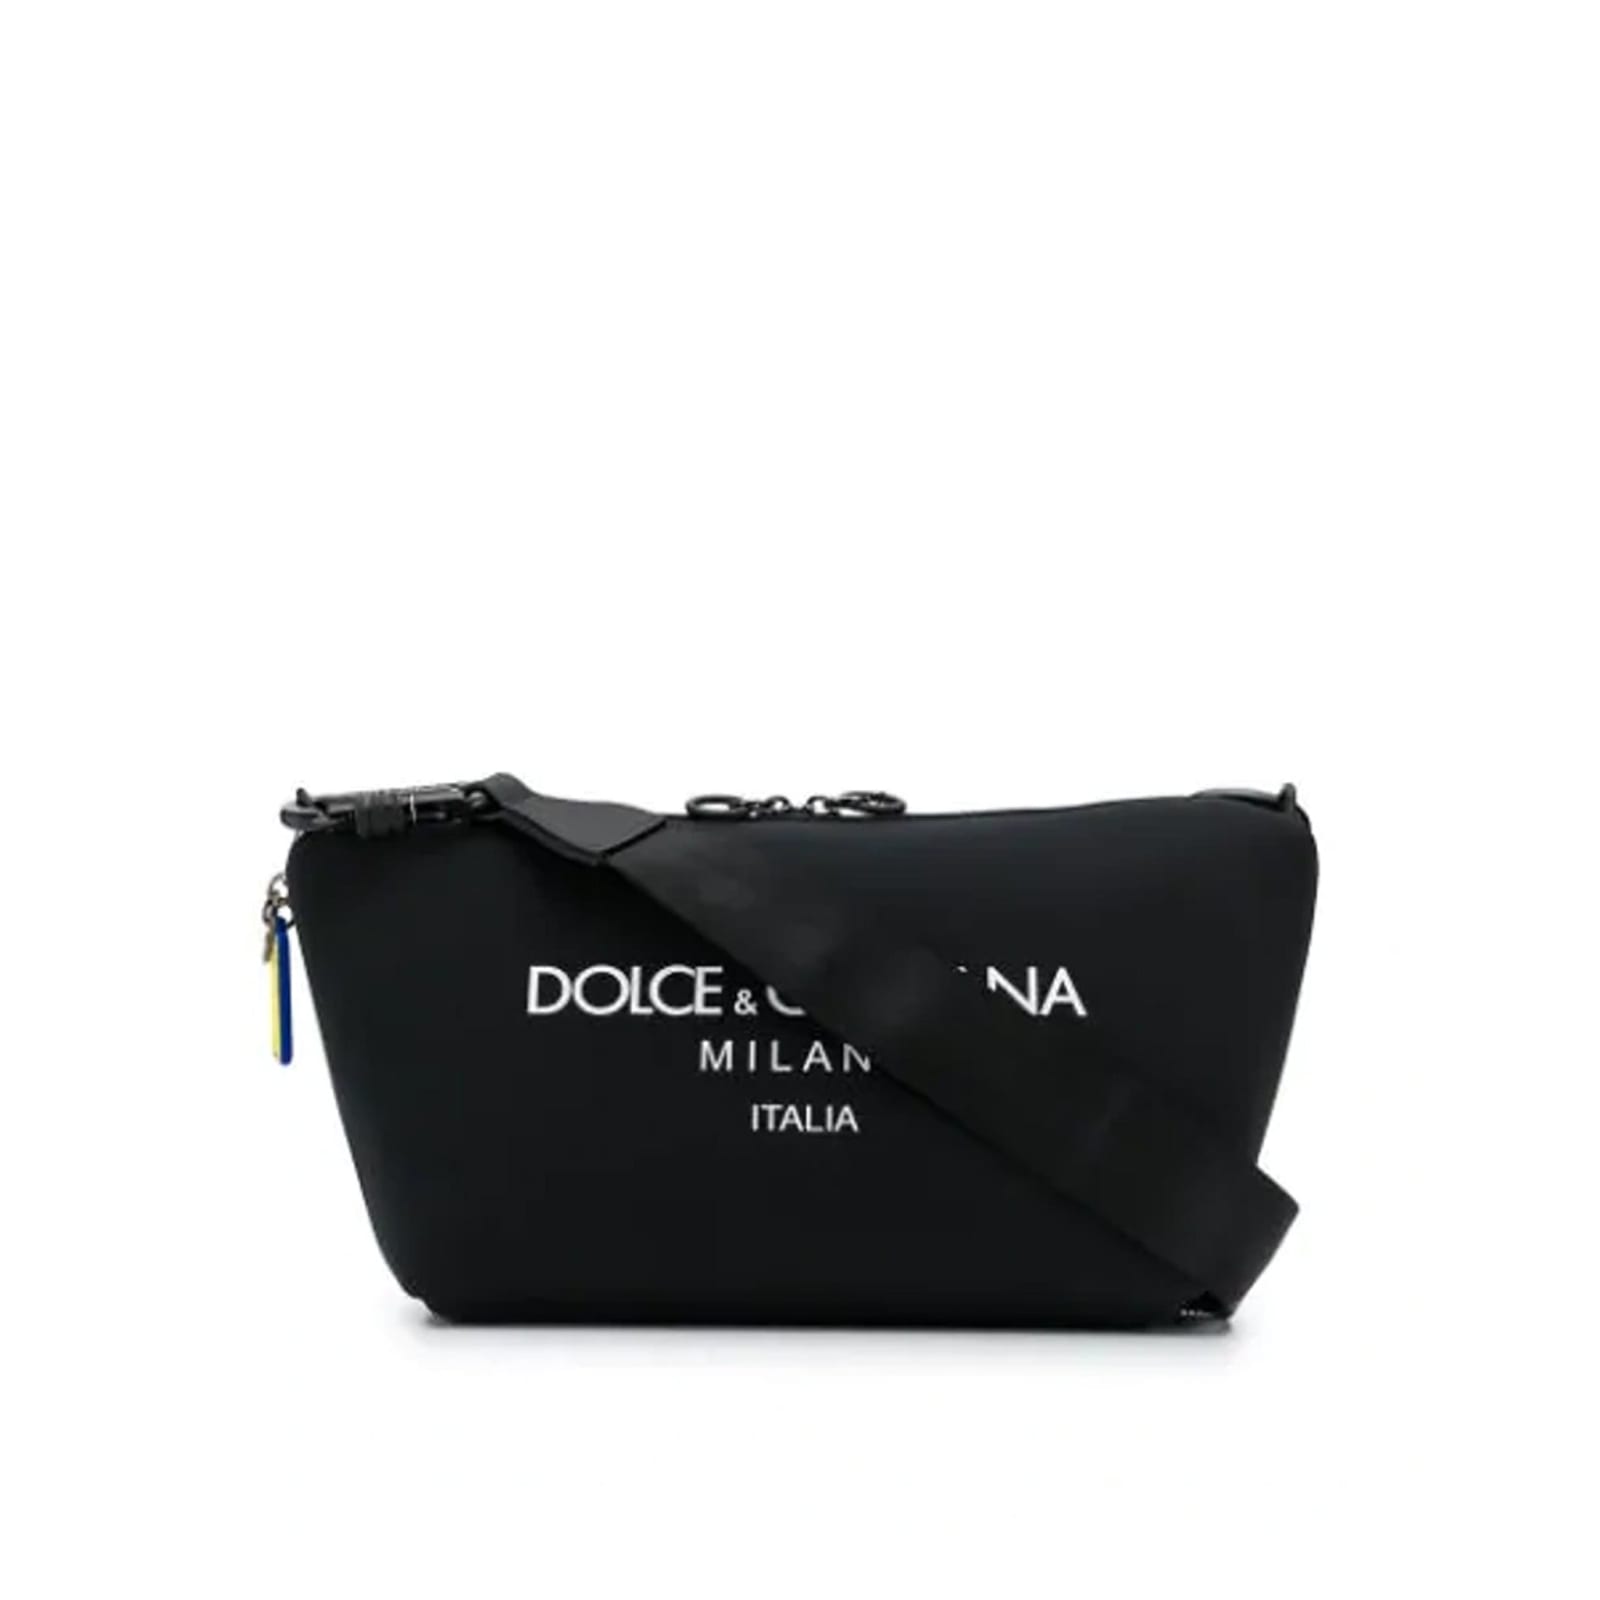 Dolce & Gabbana Nylon Logo Bag